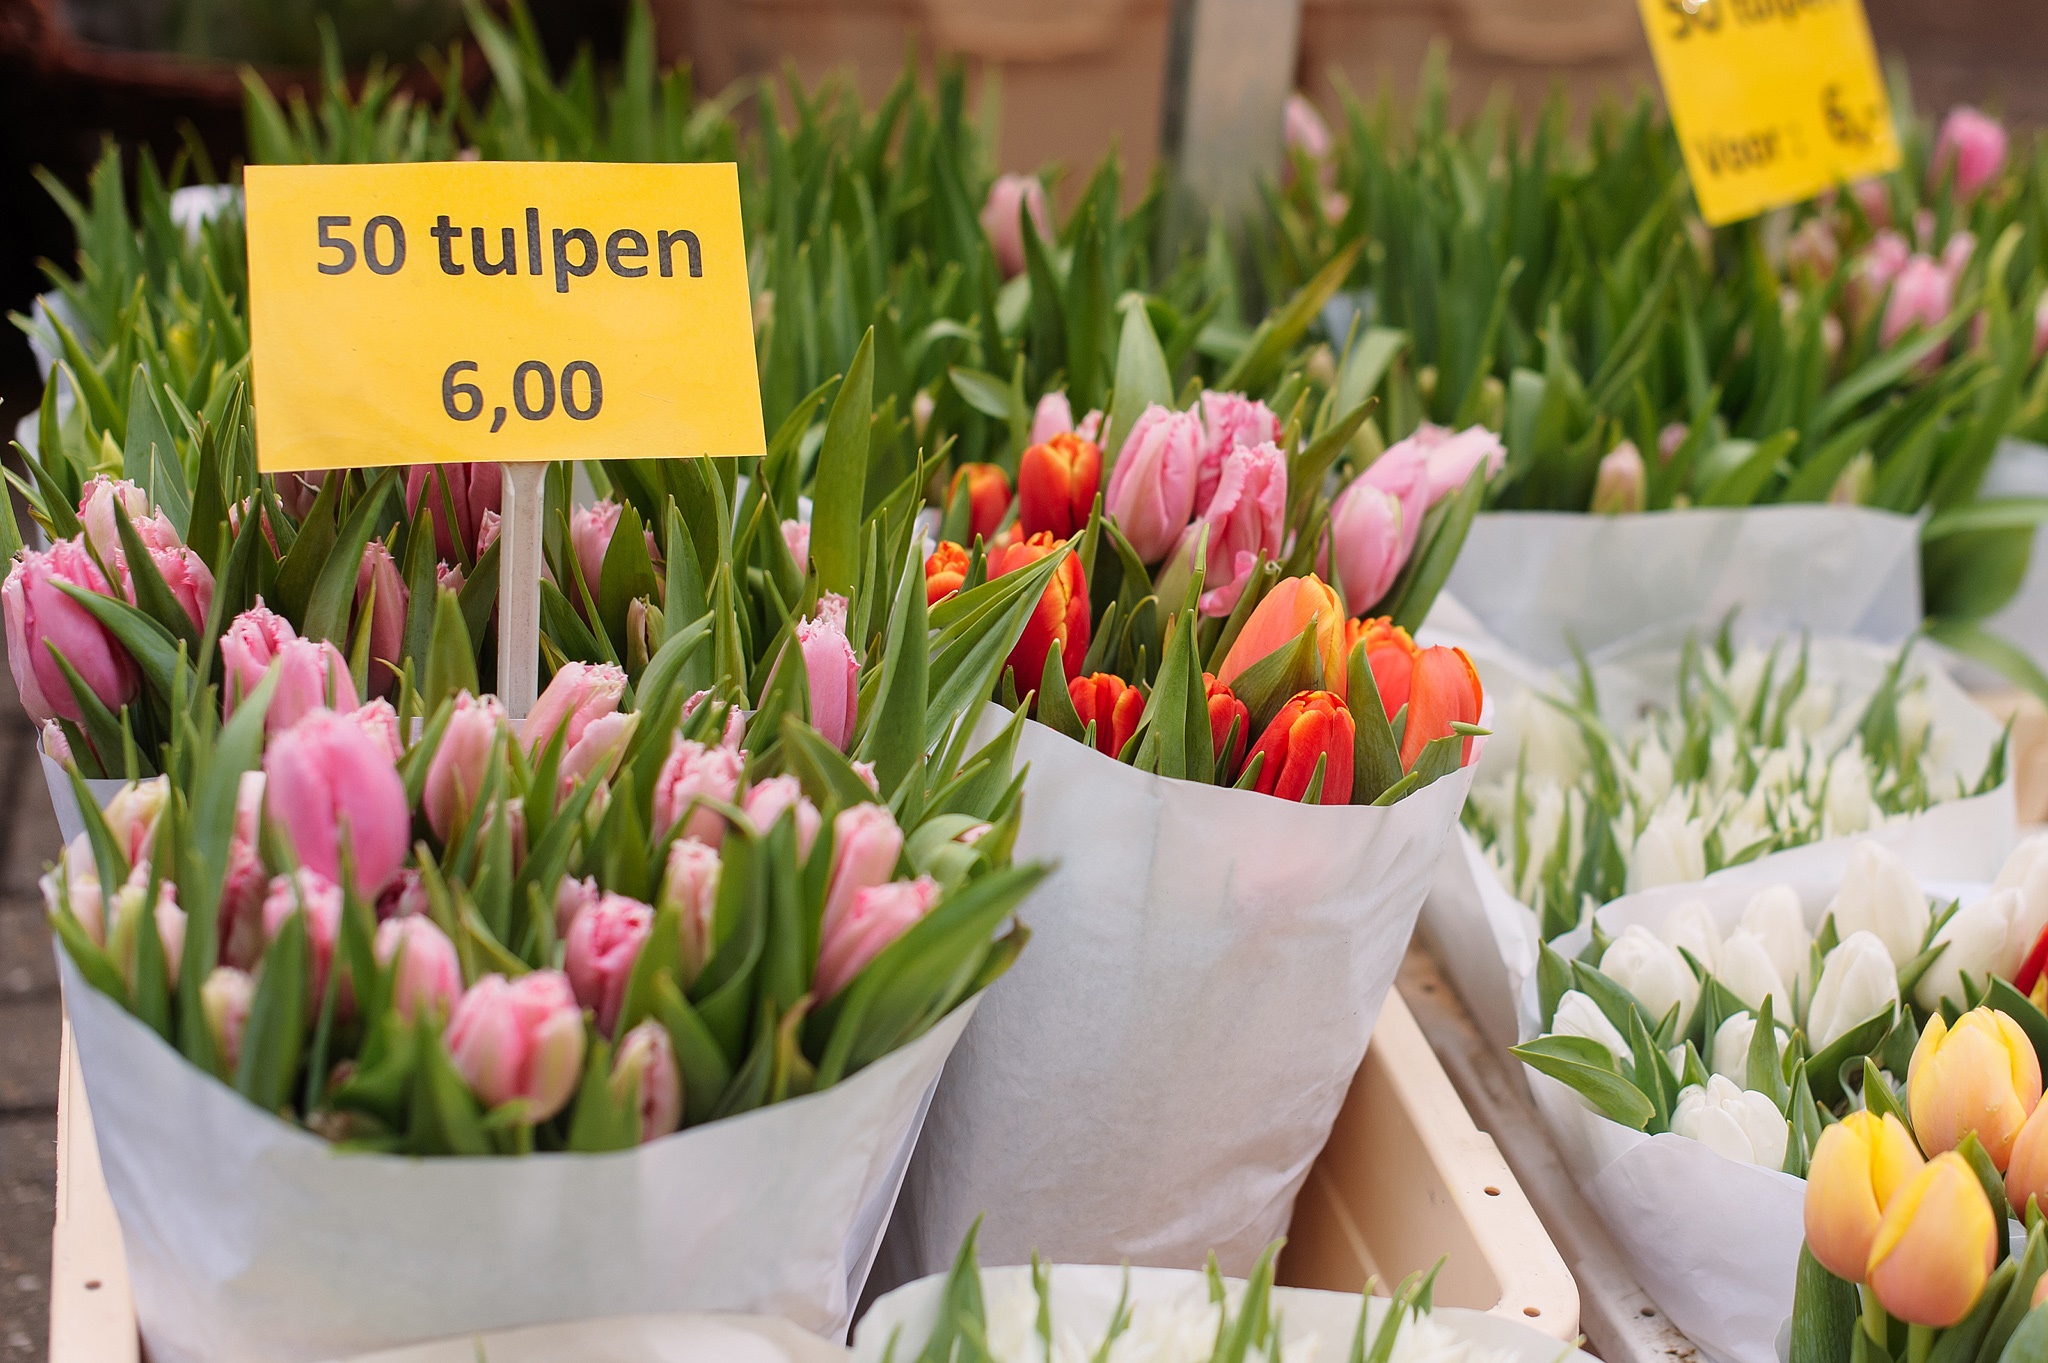 Цена тюльпана в розницу